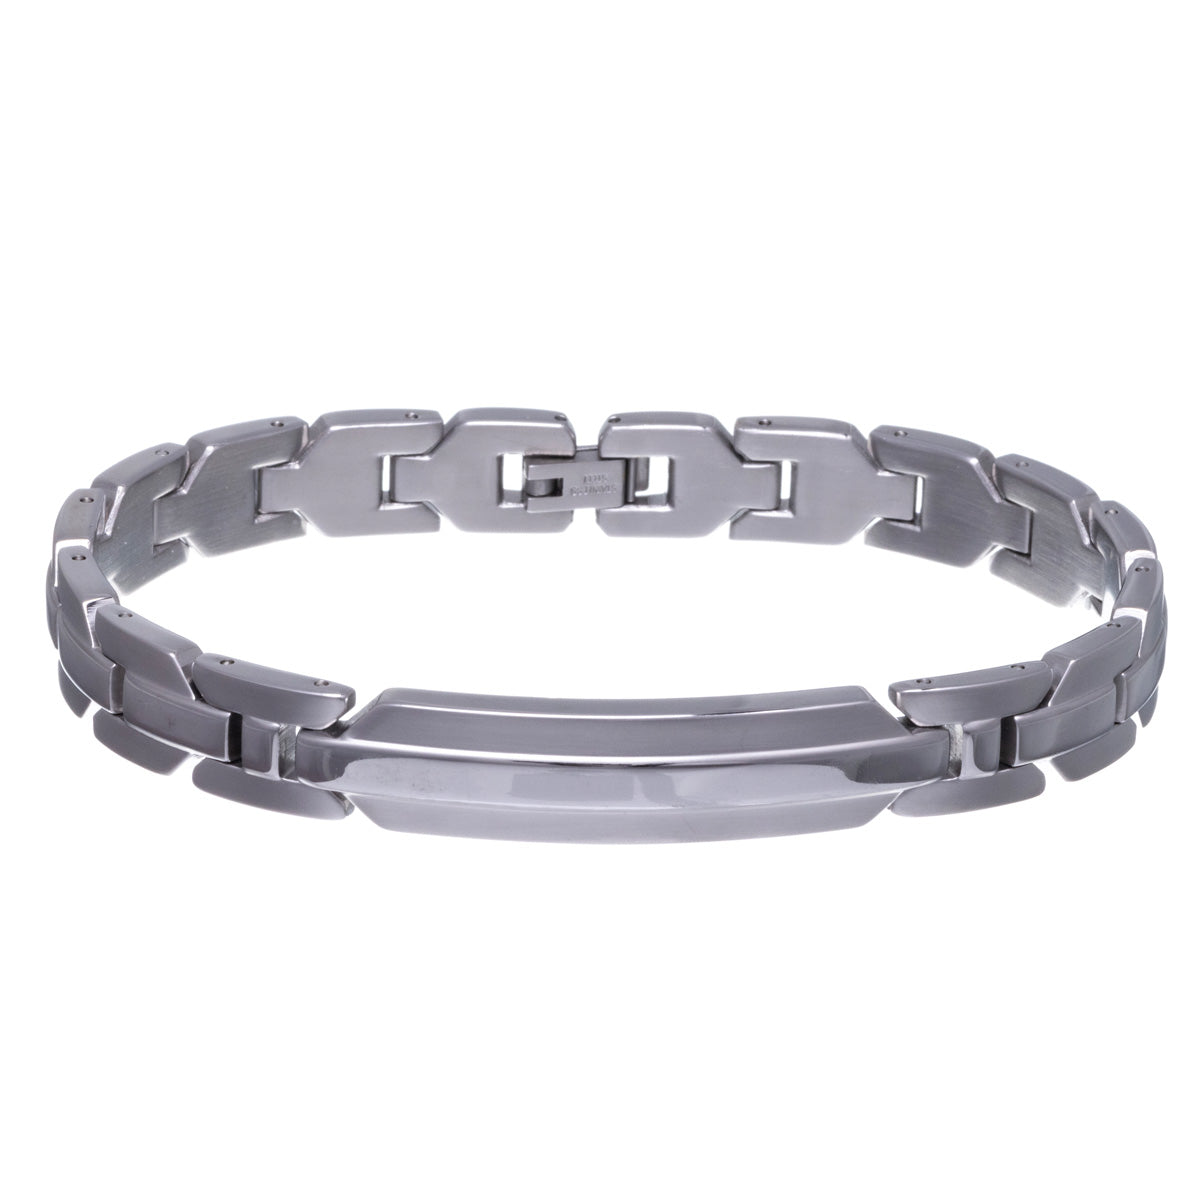 Steel plate bracelet 21,5cm (Steel 316L)